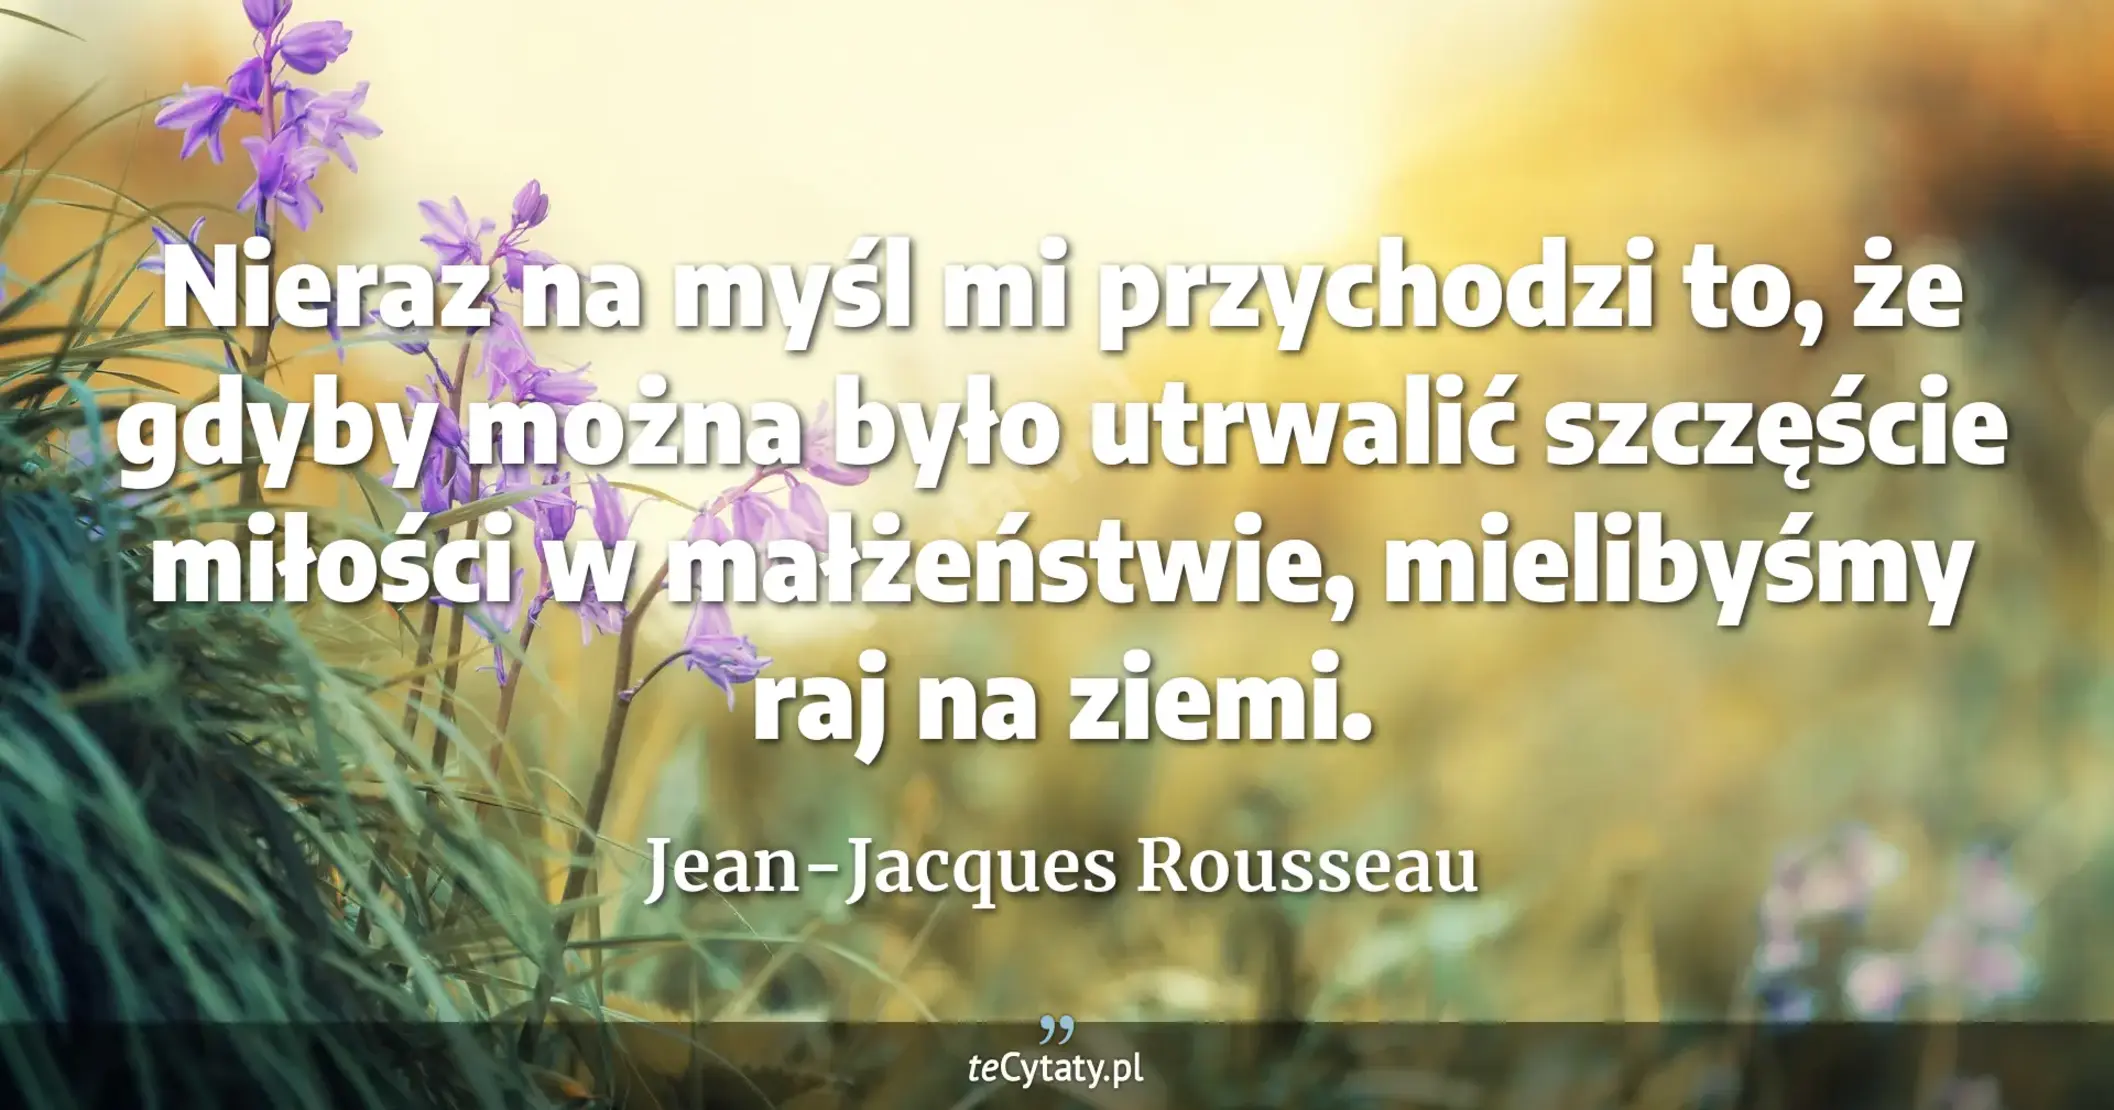 Nieraz na myśl mi przychodzi to, że gdyby można było utrwalić szczęście miłości w małżeństwie, mielibyśmy raj na ziemi. - Jean-Jacques Rousseau